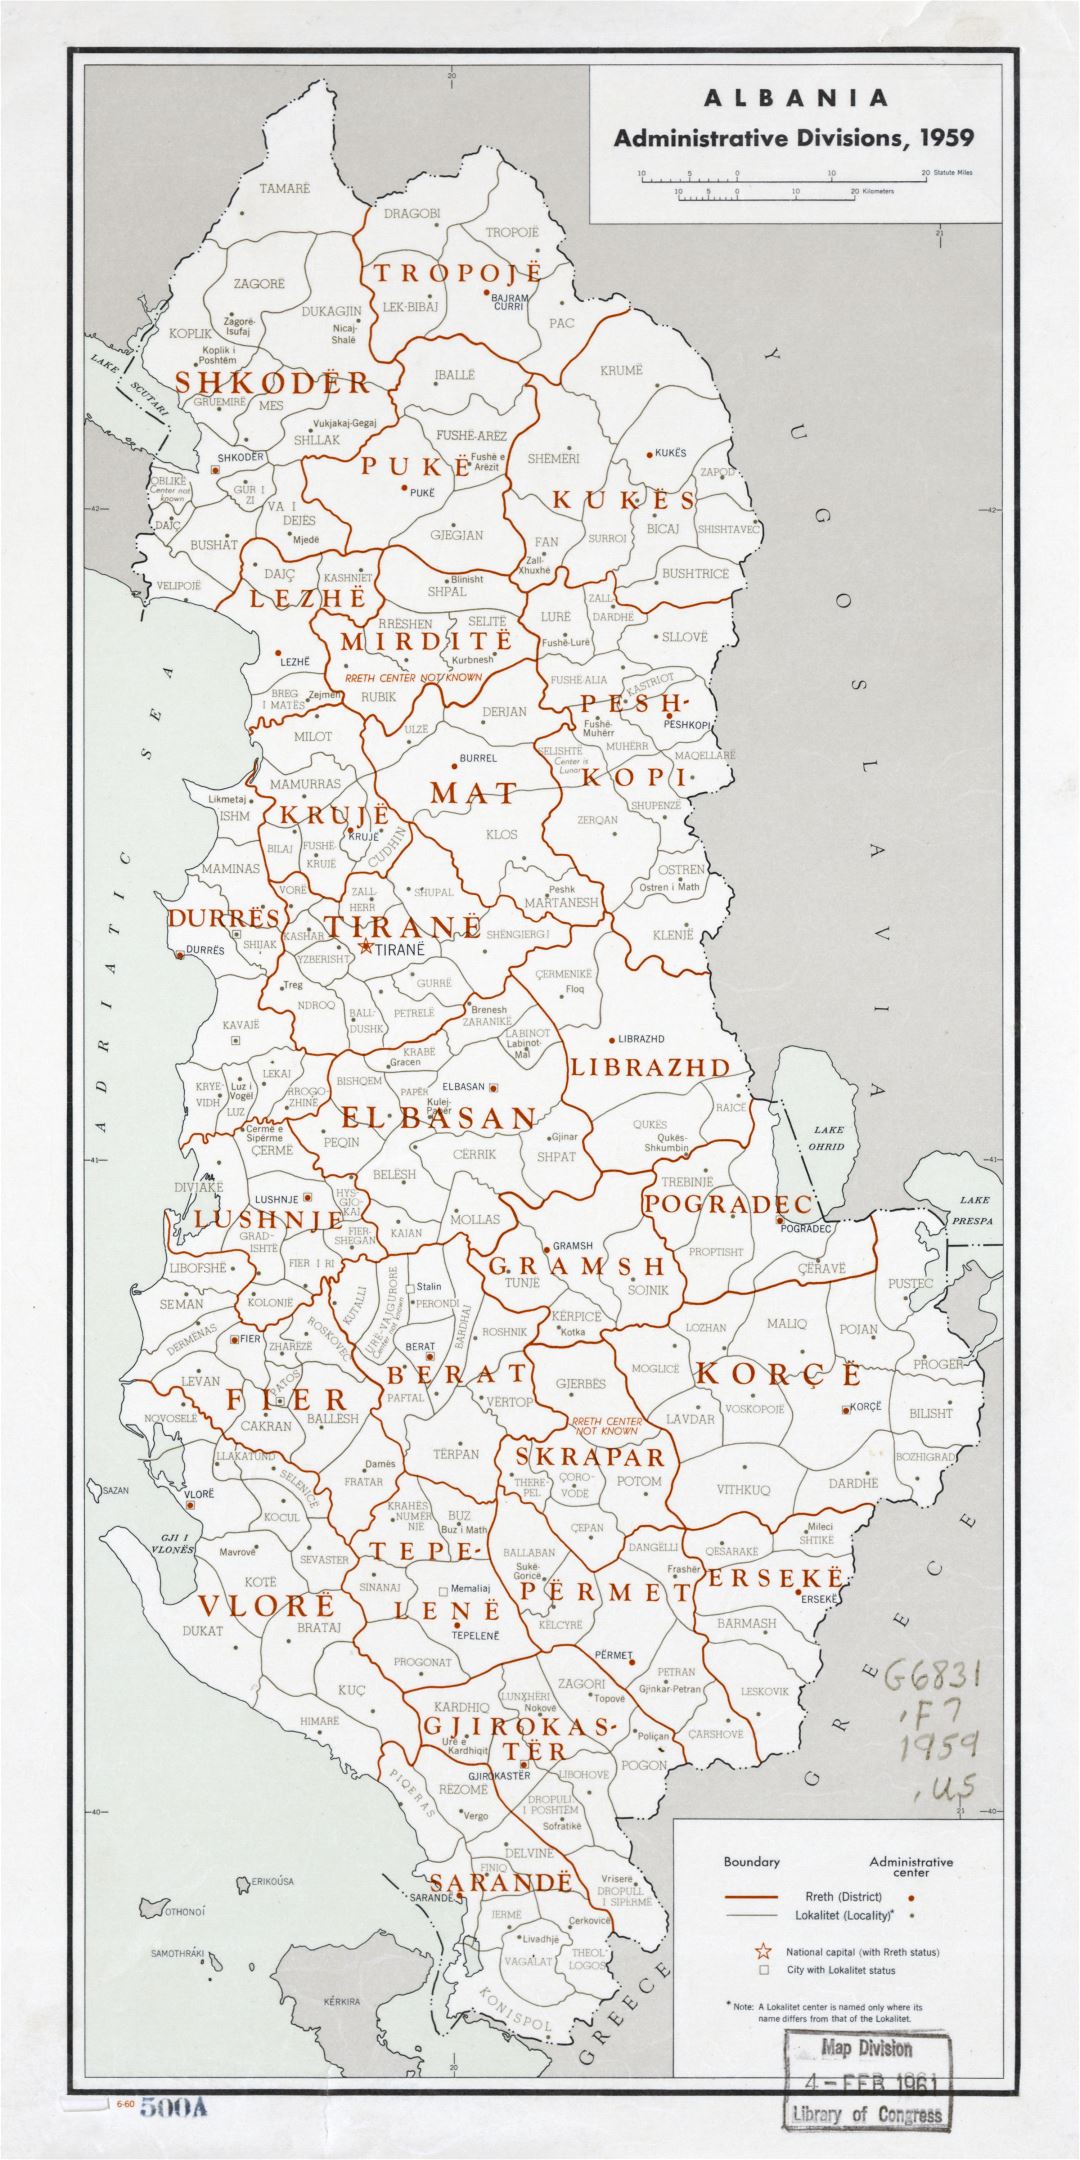 Gran escala detallada divisiones administrativas Mapa de Albania - 1959